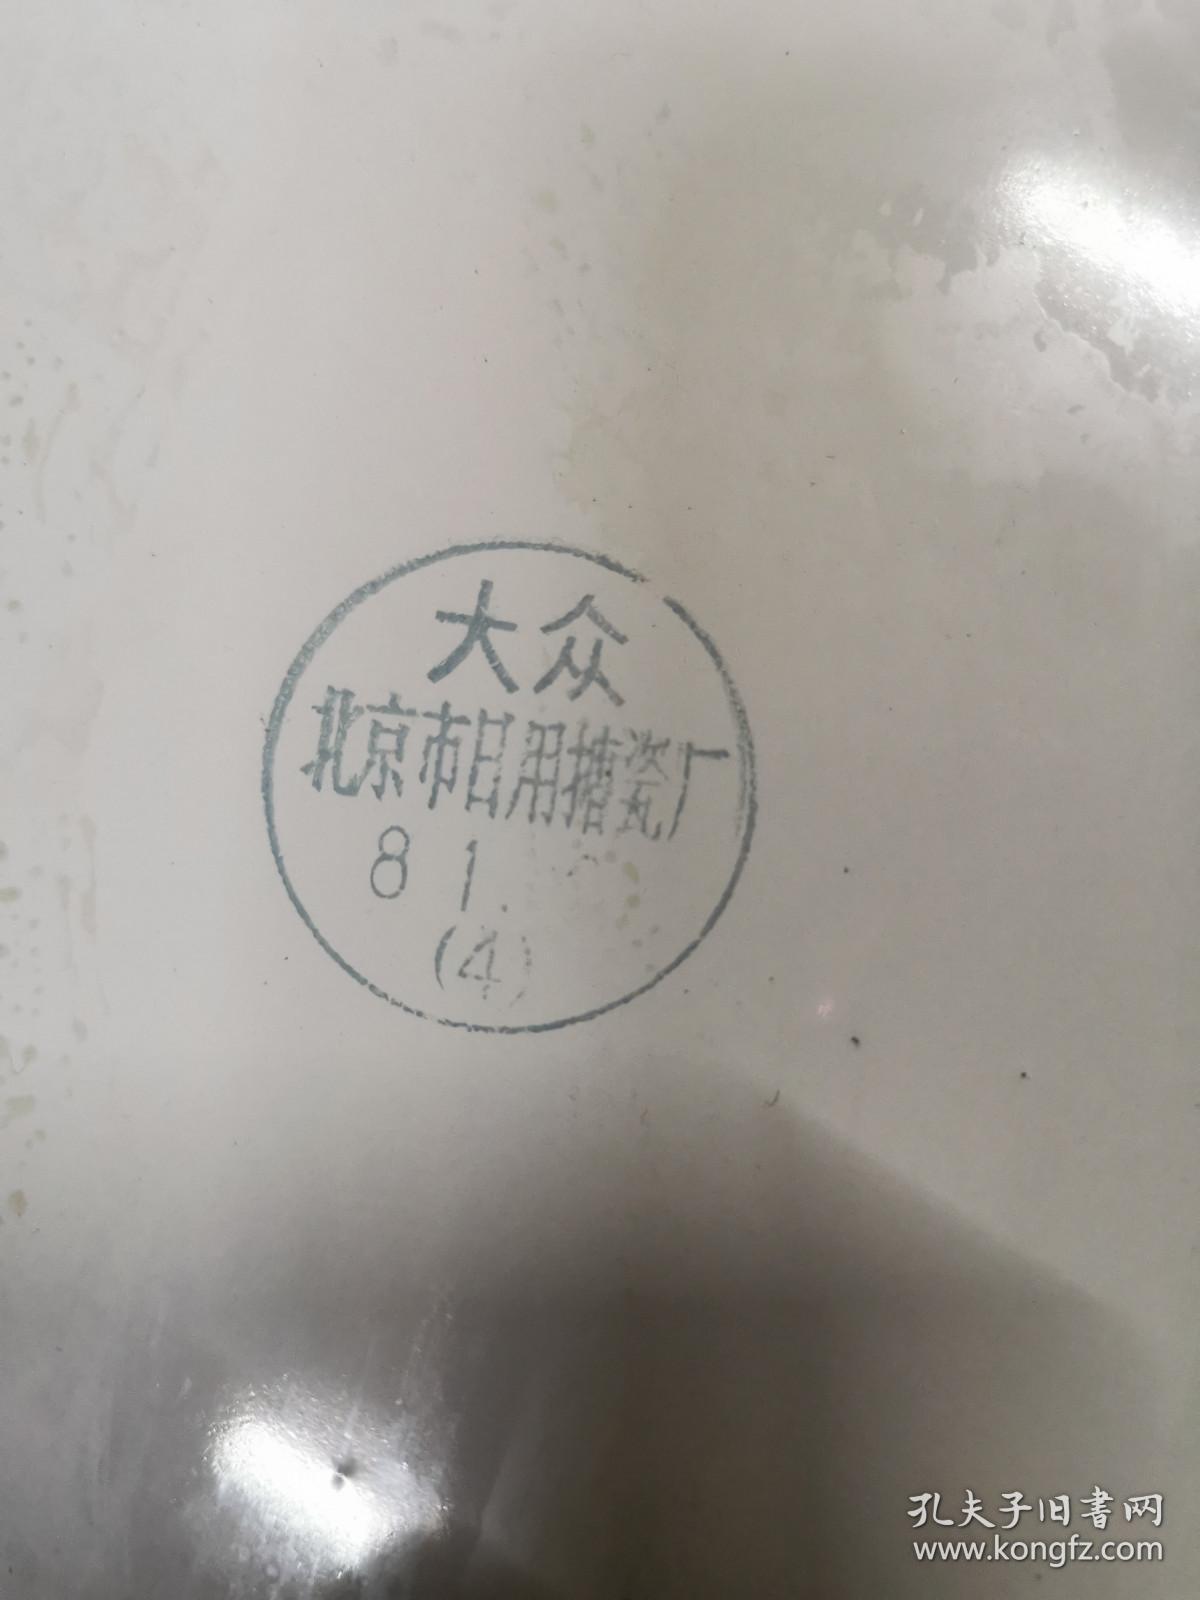 北京市日用搪瓷厂超大器型及其少见《大众牌》搪瓷盘40厘米 图案好品相不错.